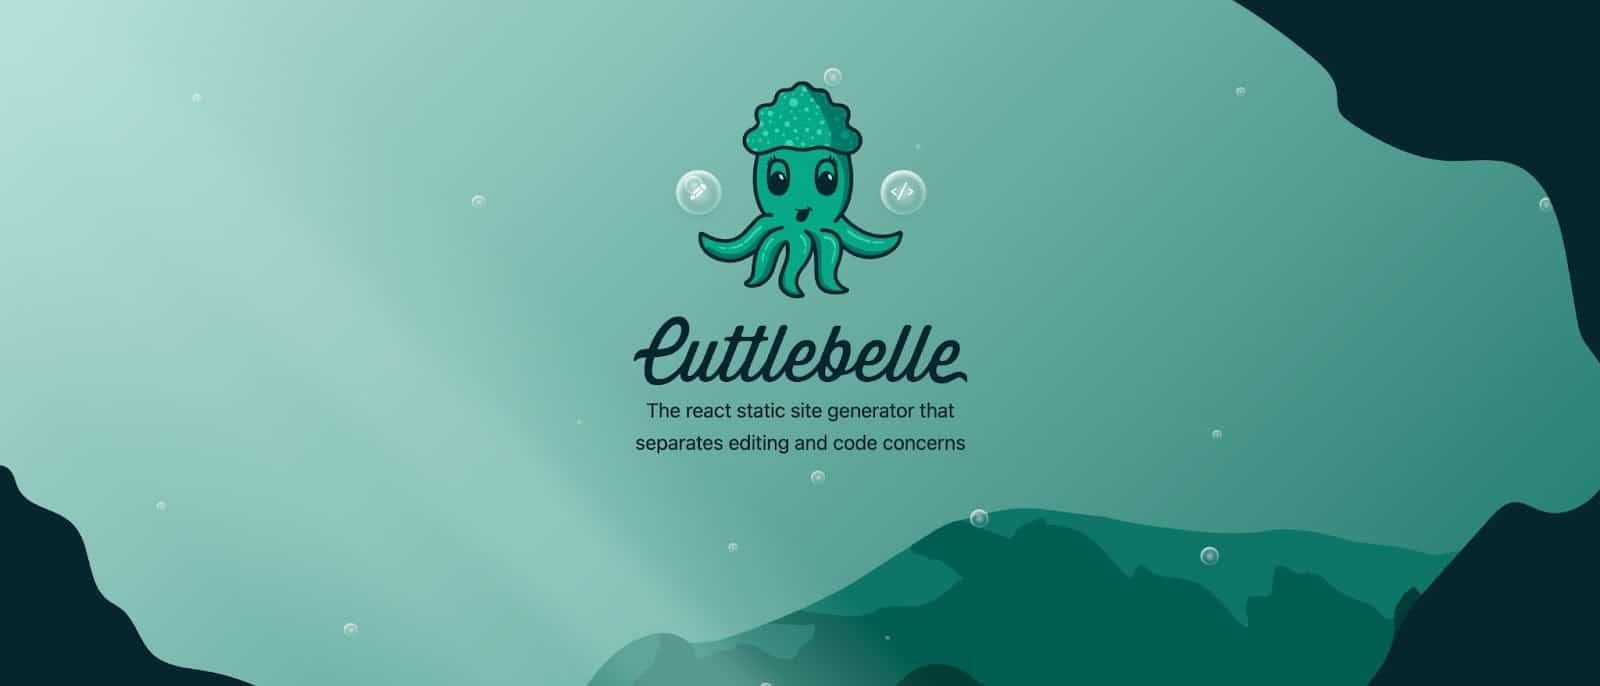 Домашняя страница веб-сайта Cuttlebelle